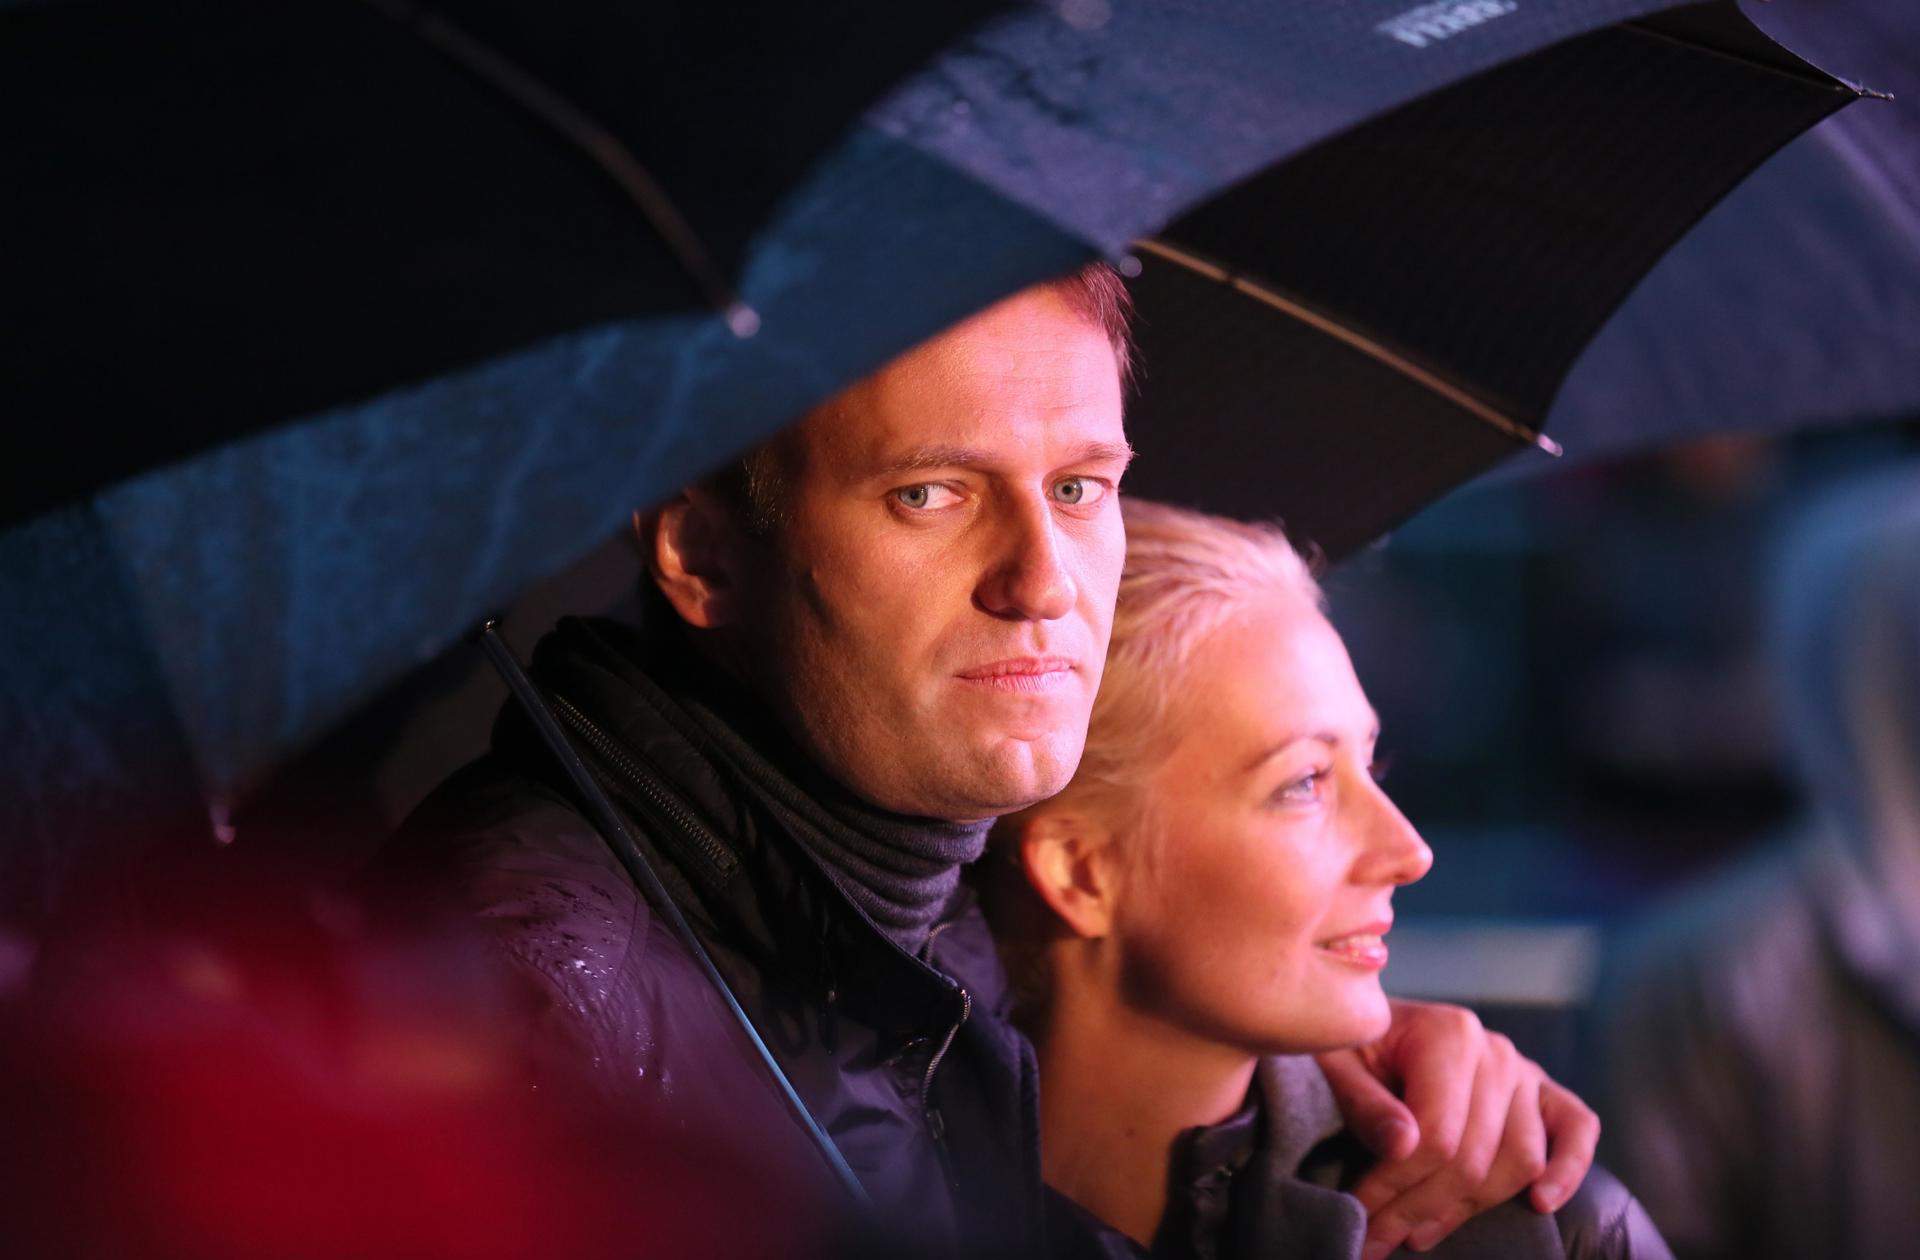 L'emotiu vídeo de comiat de la dona de Navalni: "No sé com viure sense tu, però ho intentaré"